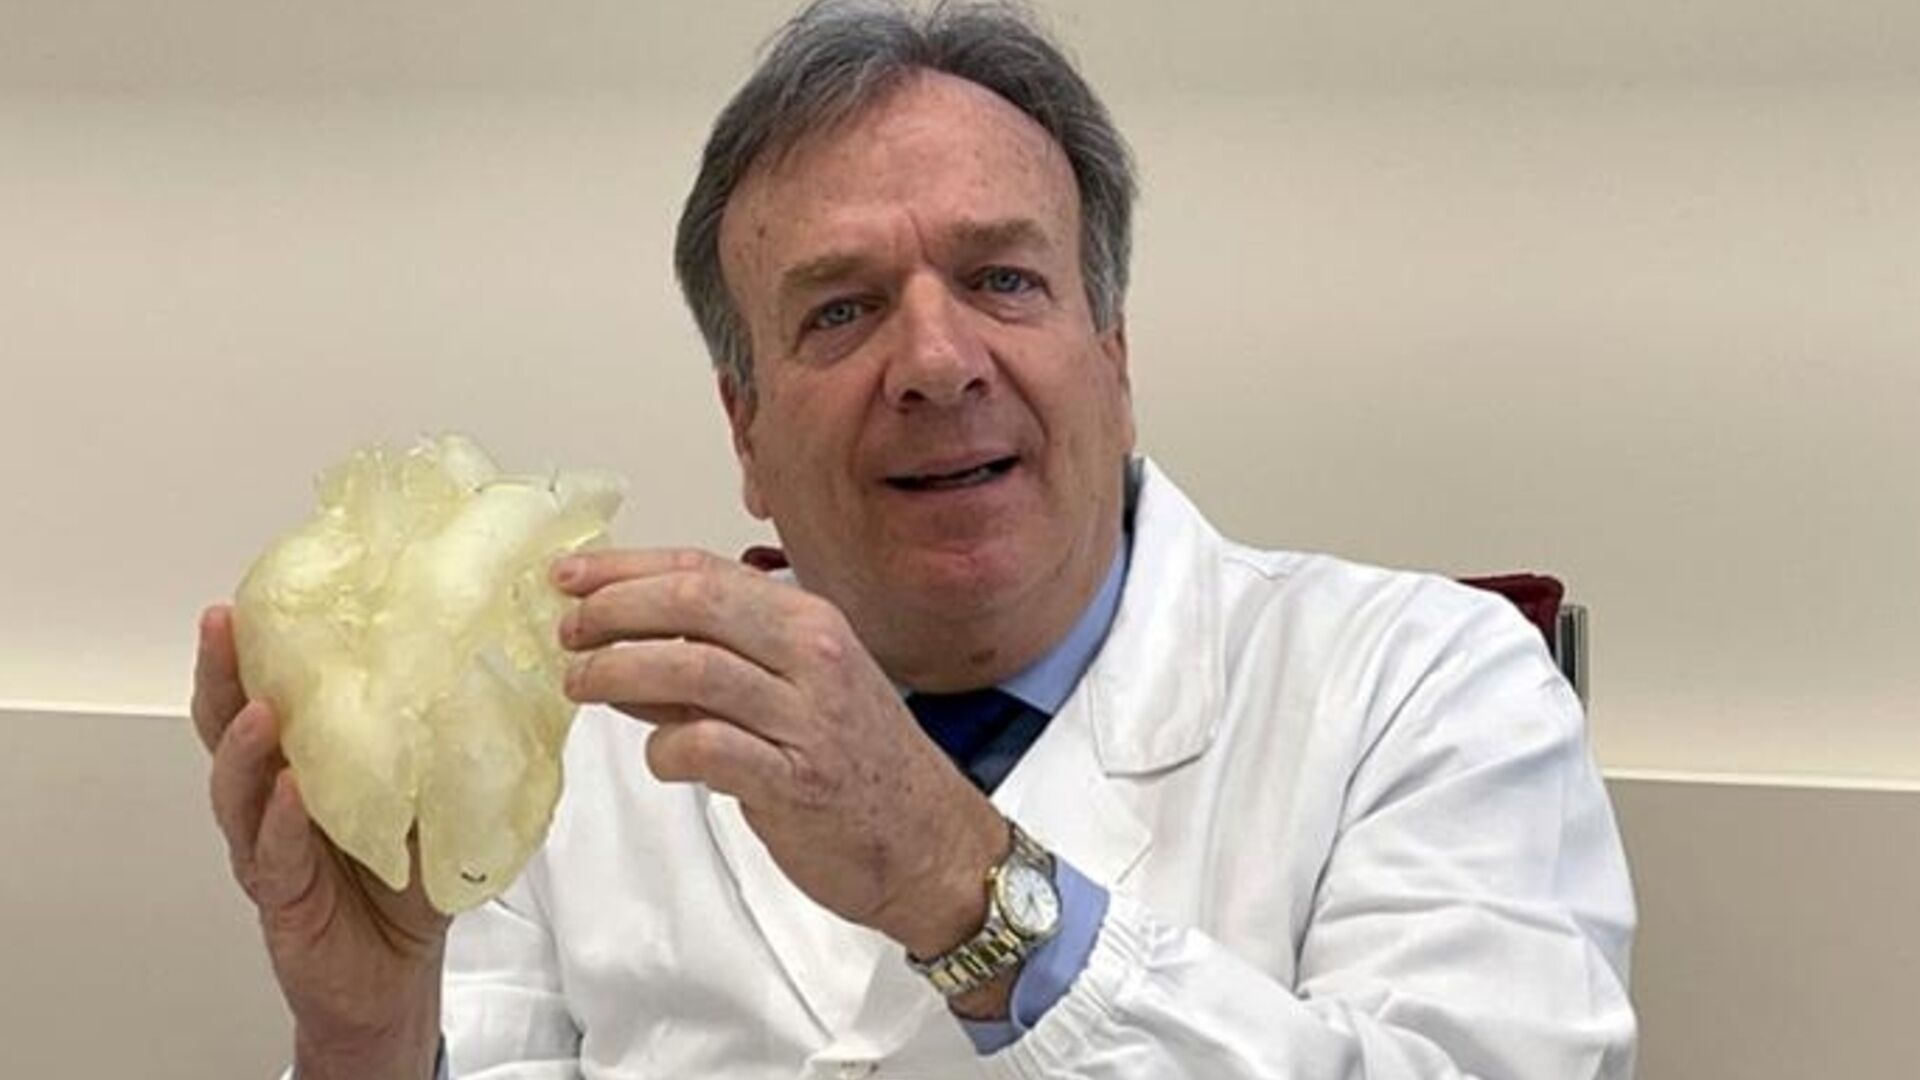 Gino Gerosa: entrevista com o cirurgião da Universidade de Pádua que coordenará médicos, engenheiros, biólogos e especialistas em materiais com um orçamento de 50 milhões de euros para criar o primeiro coração artificial italiano